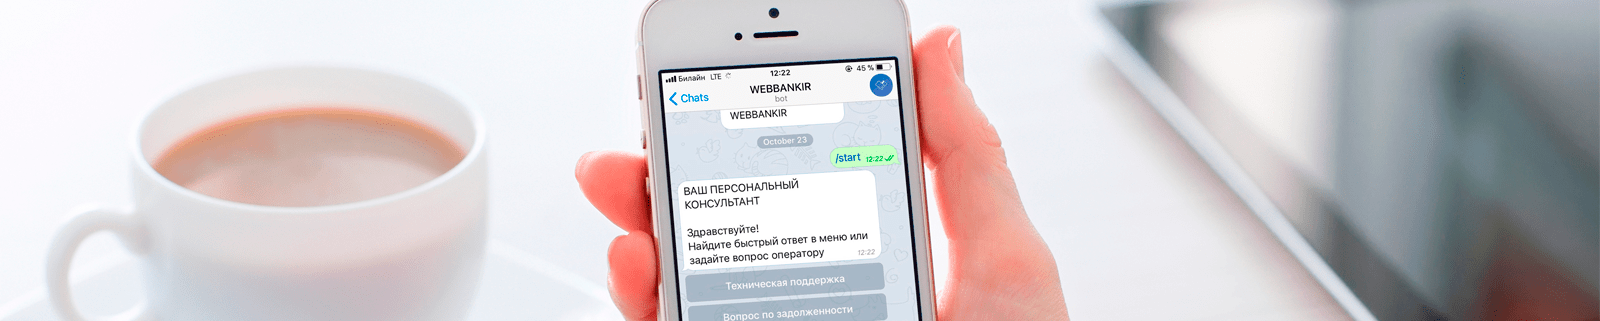 Займы через Telegram-бота Webbankir: как это работает